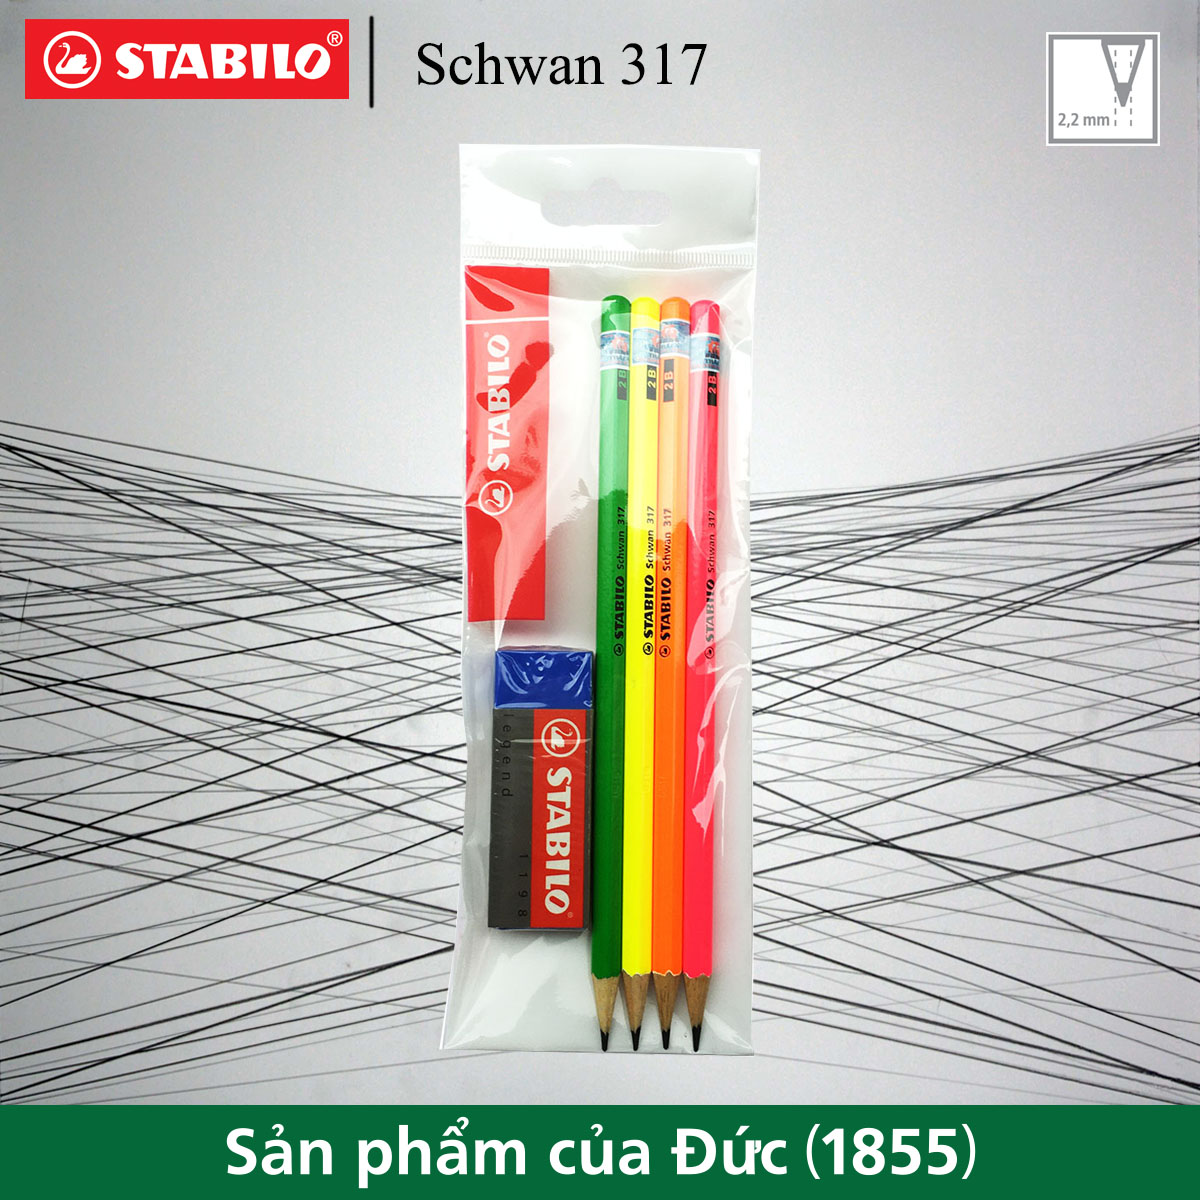 bộ 4 bút chì gỗ STABILO Schwan 317 2B